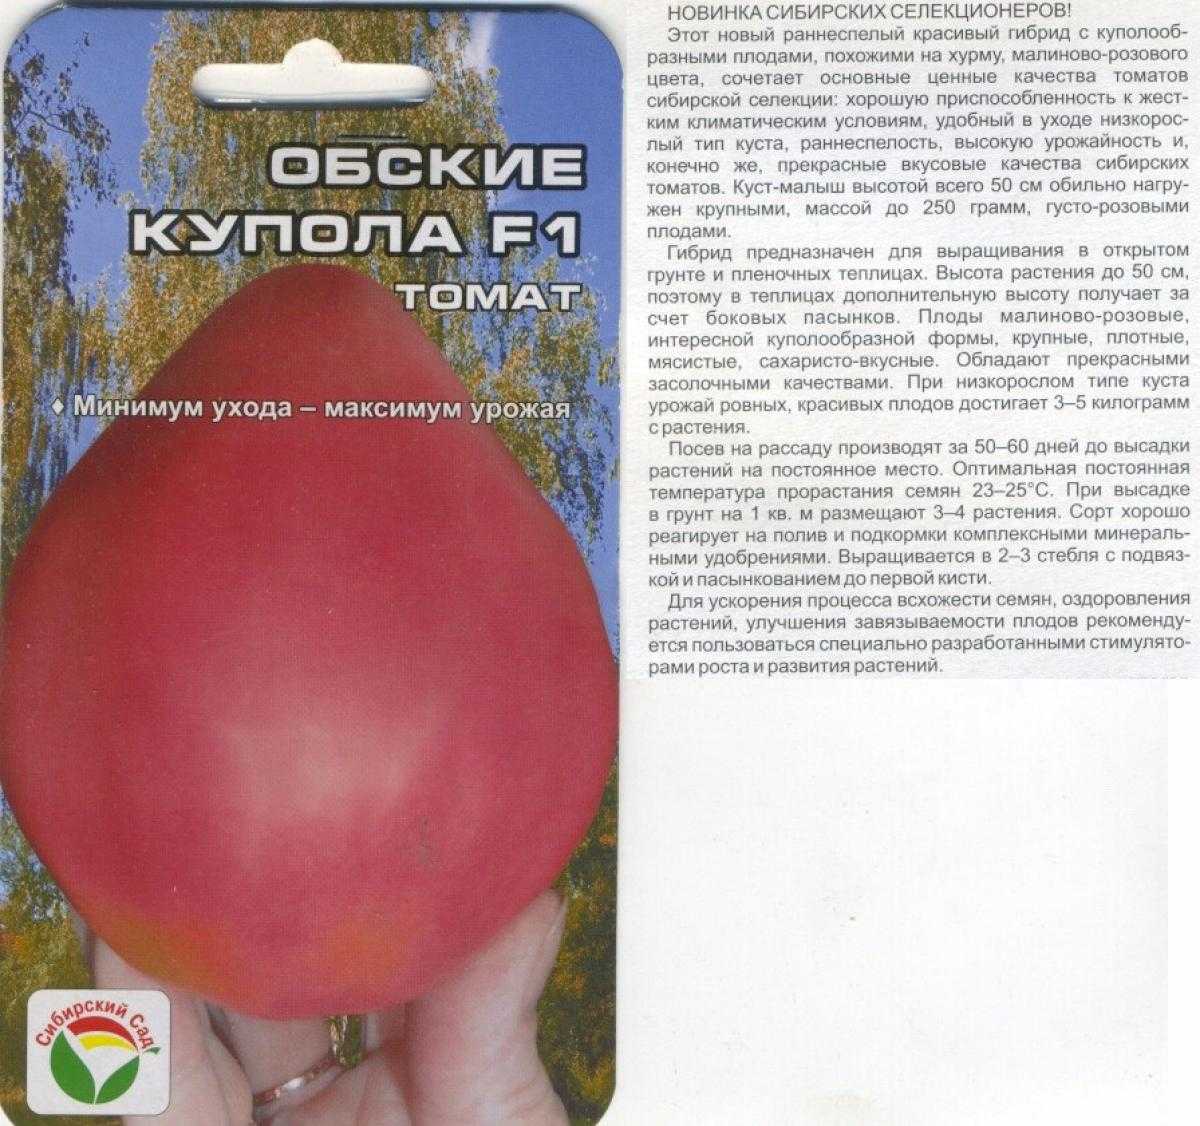 Семена томатов Обские купола